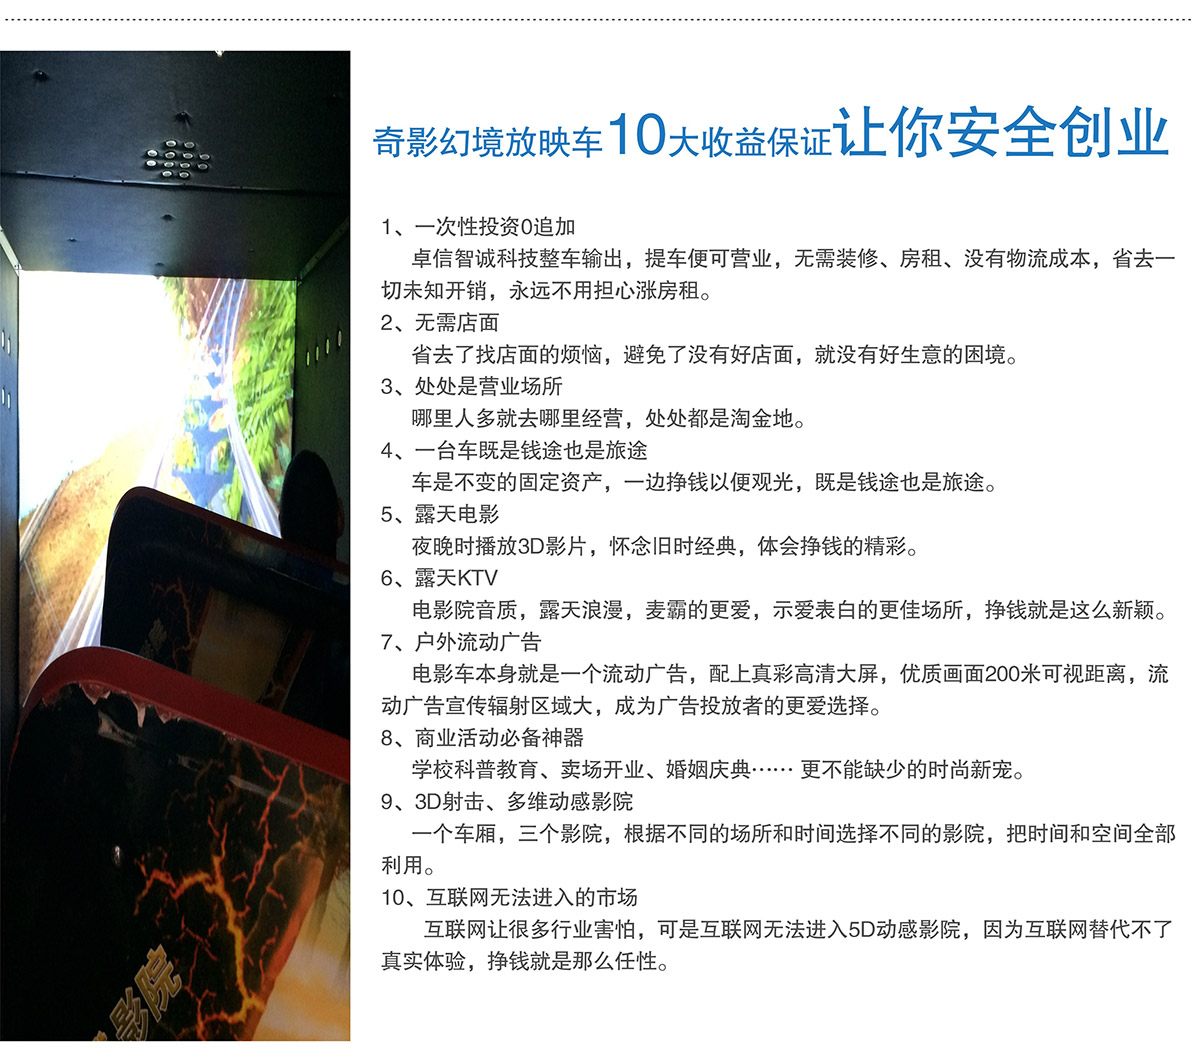 广东省广州奇影幻境5D放映车10大收益保证让你安全创业.jpg